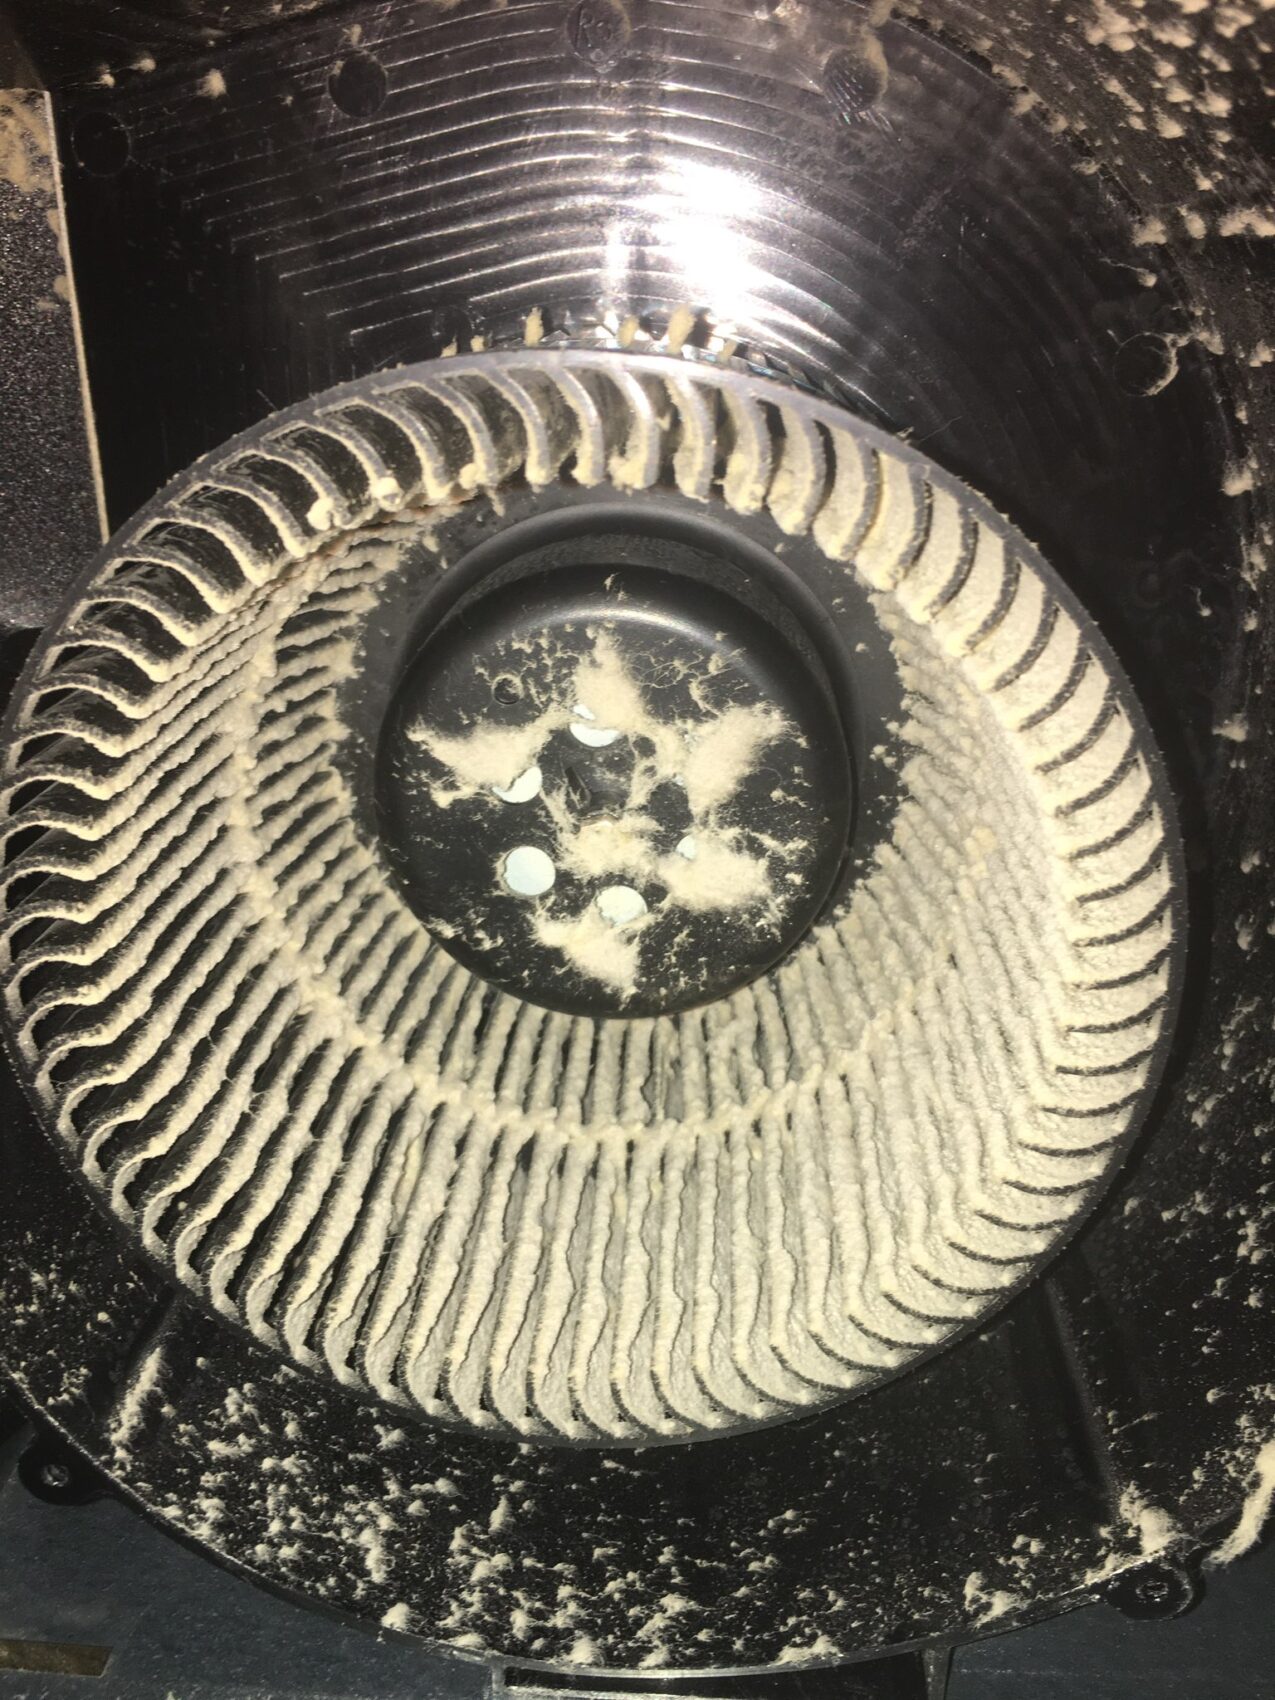 Exhaust fan cleaning